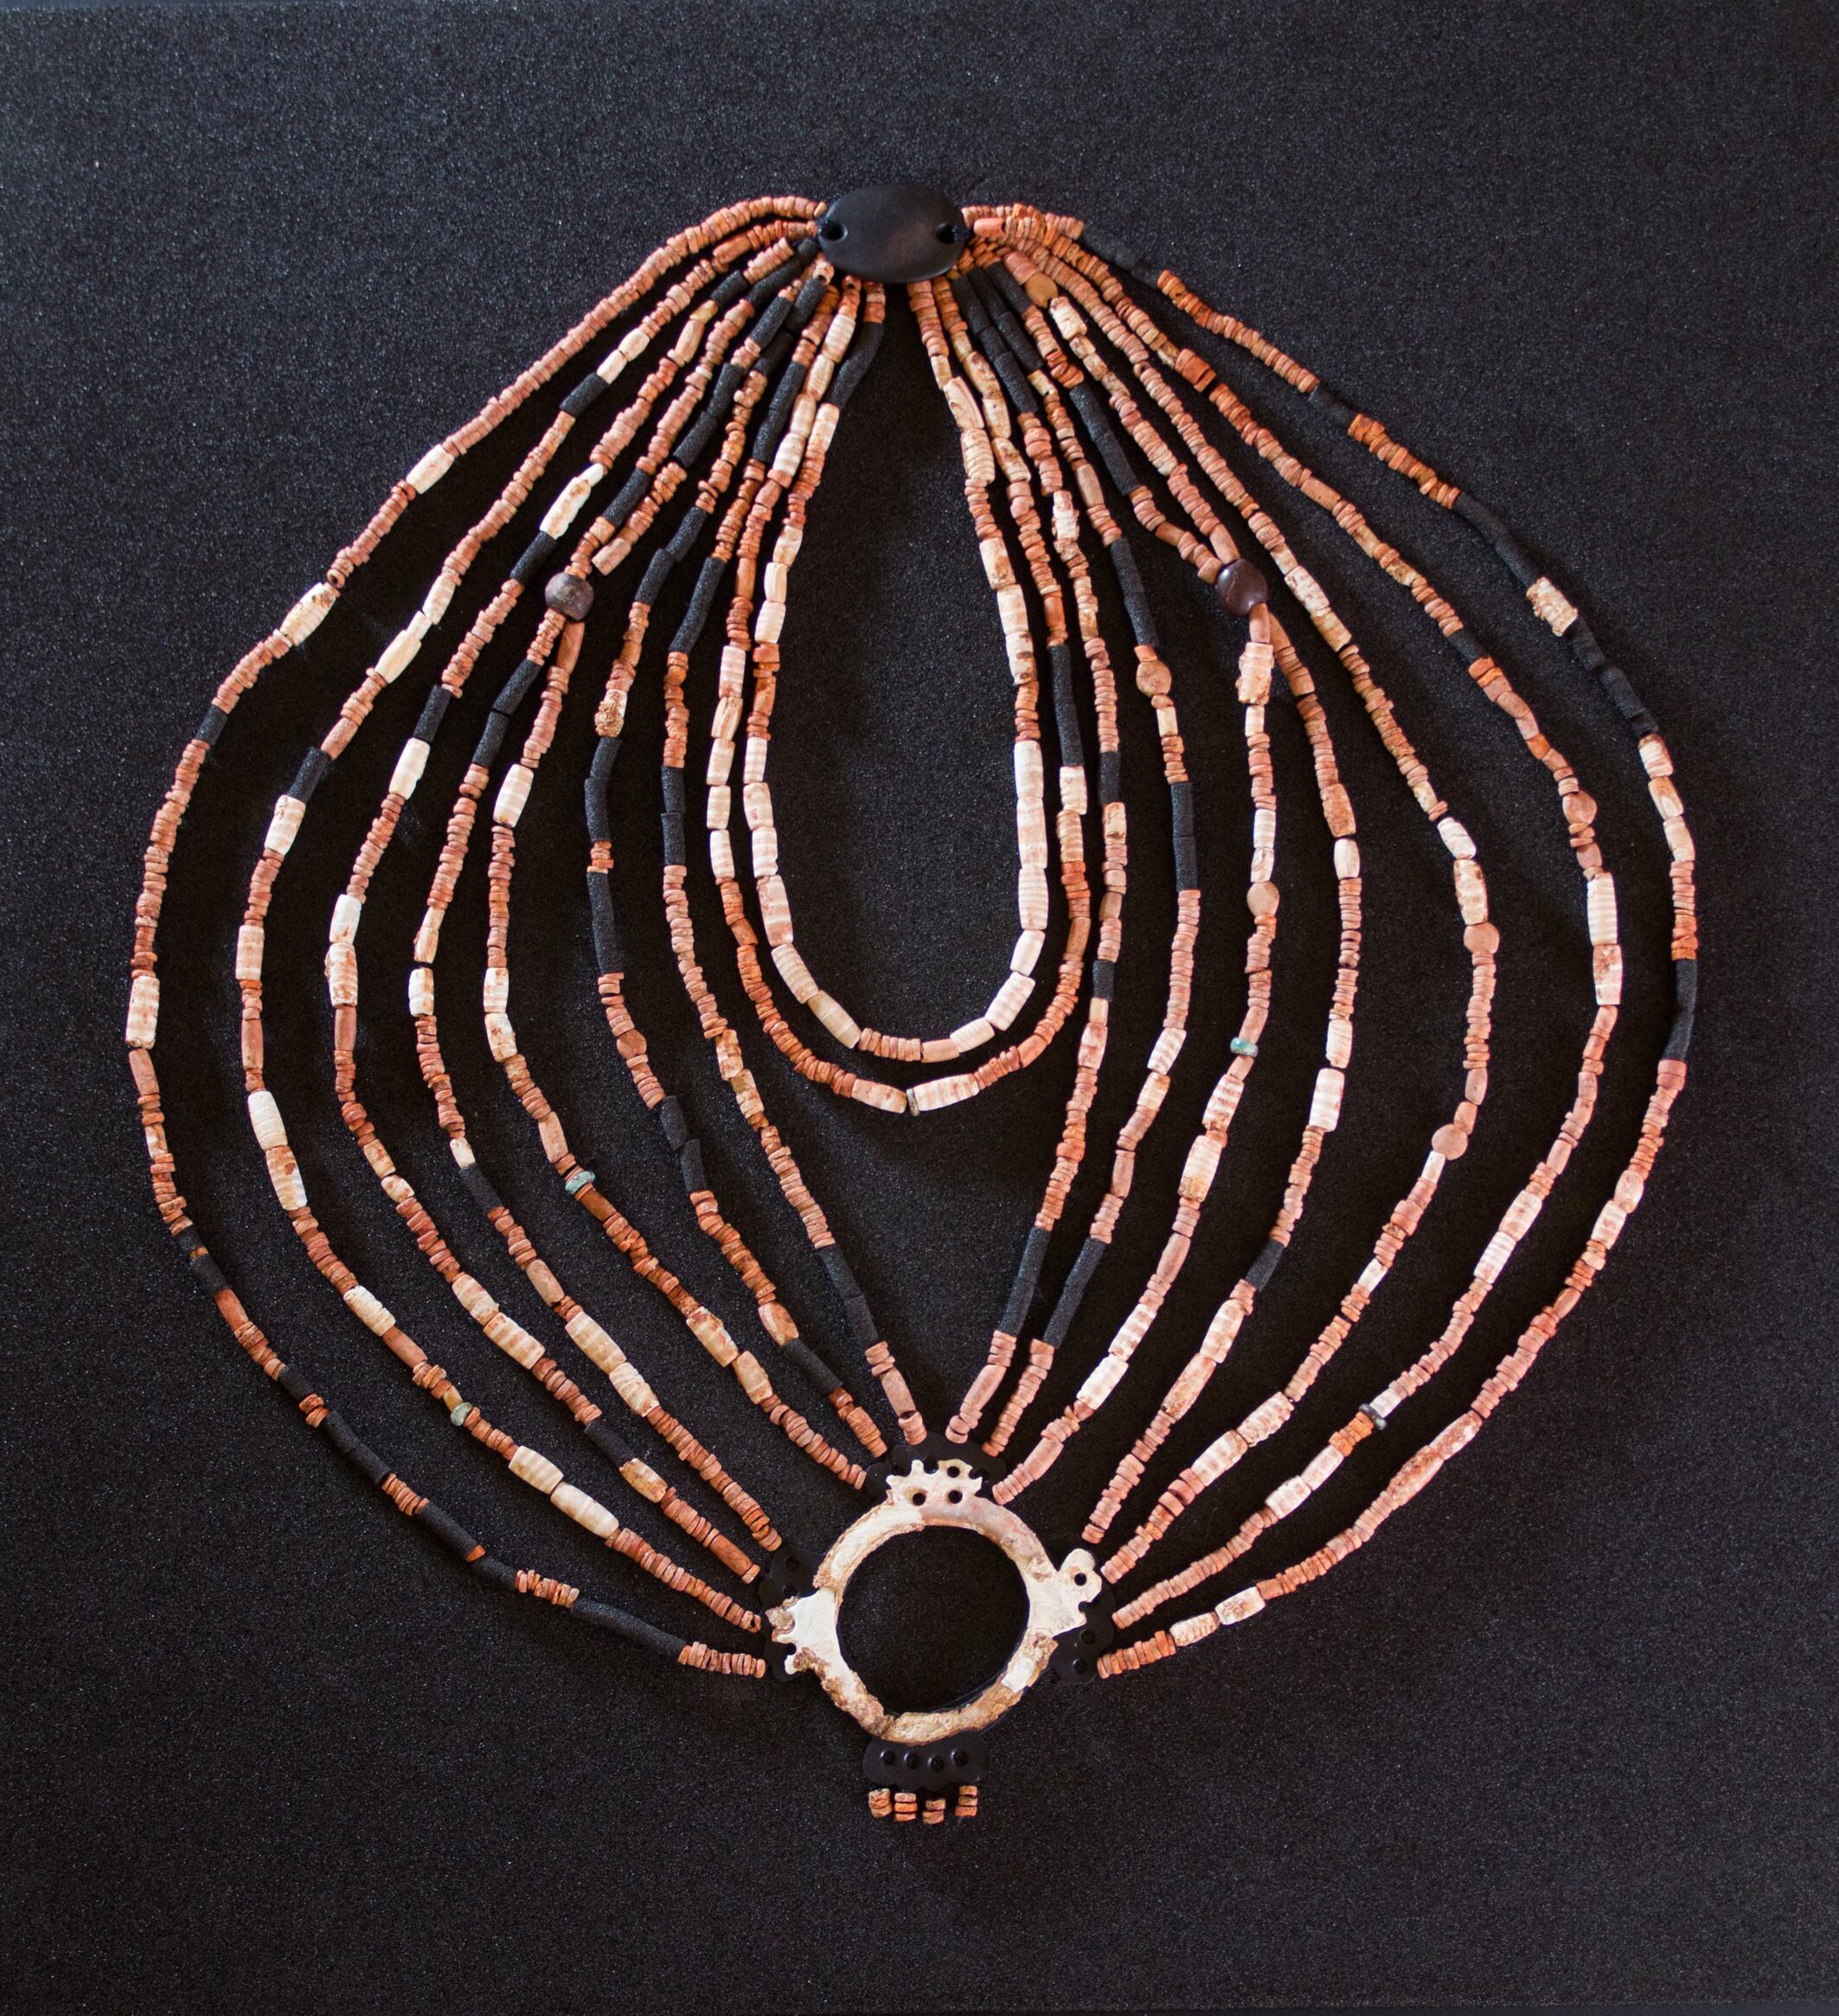 Reconstrucción del collar de más de 7000 años de Ba'ja, hoy expuesto en el nuevo Museo de Petra en Jordania.